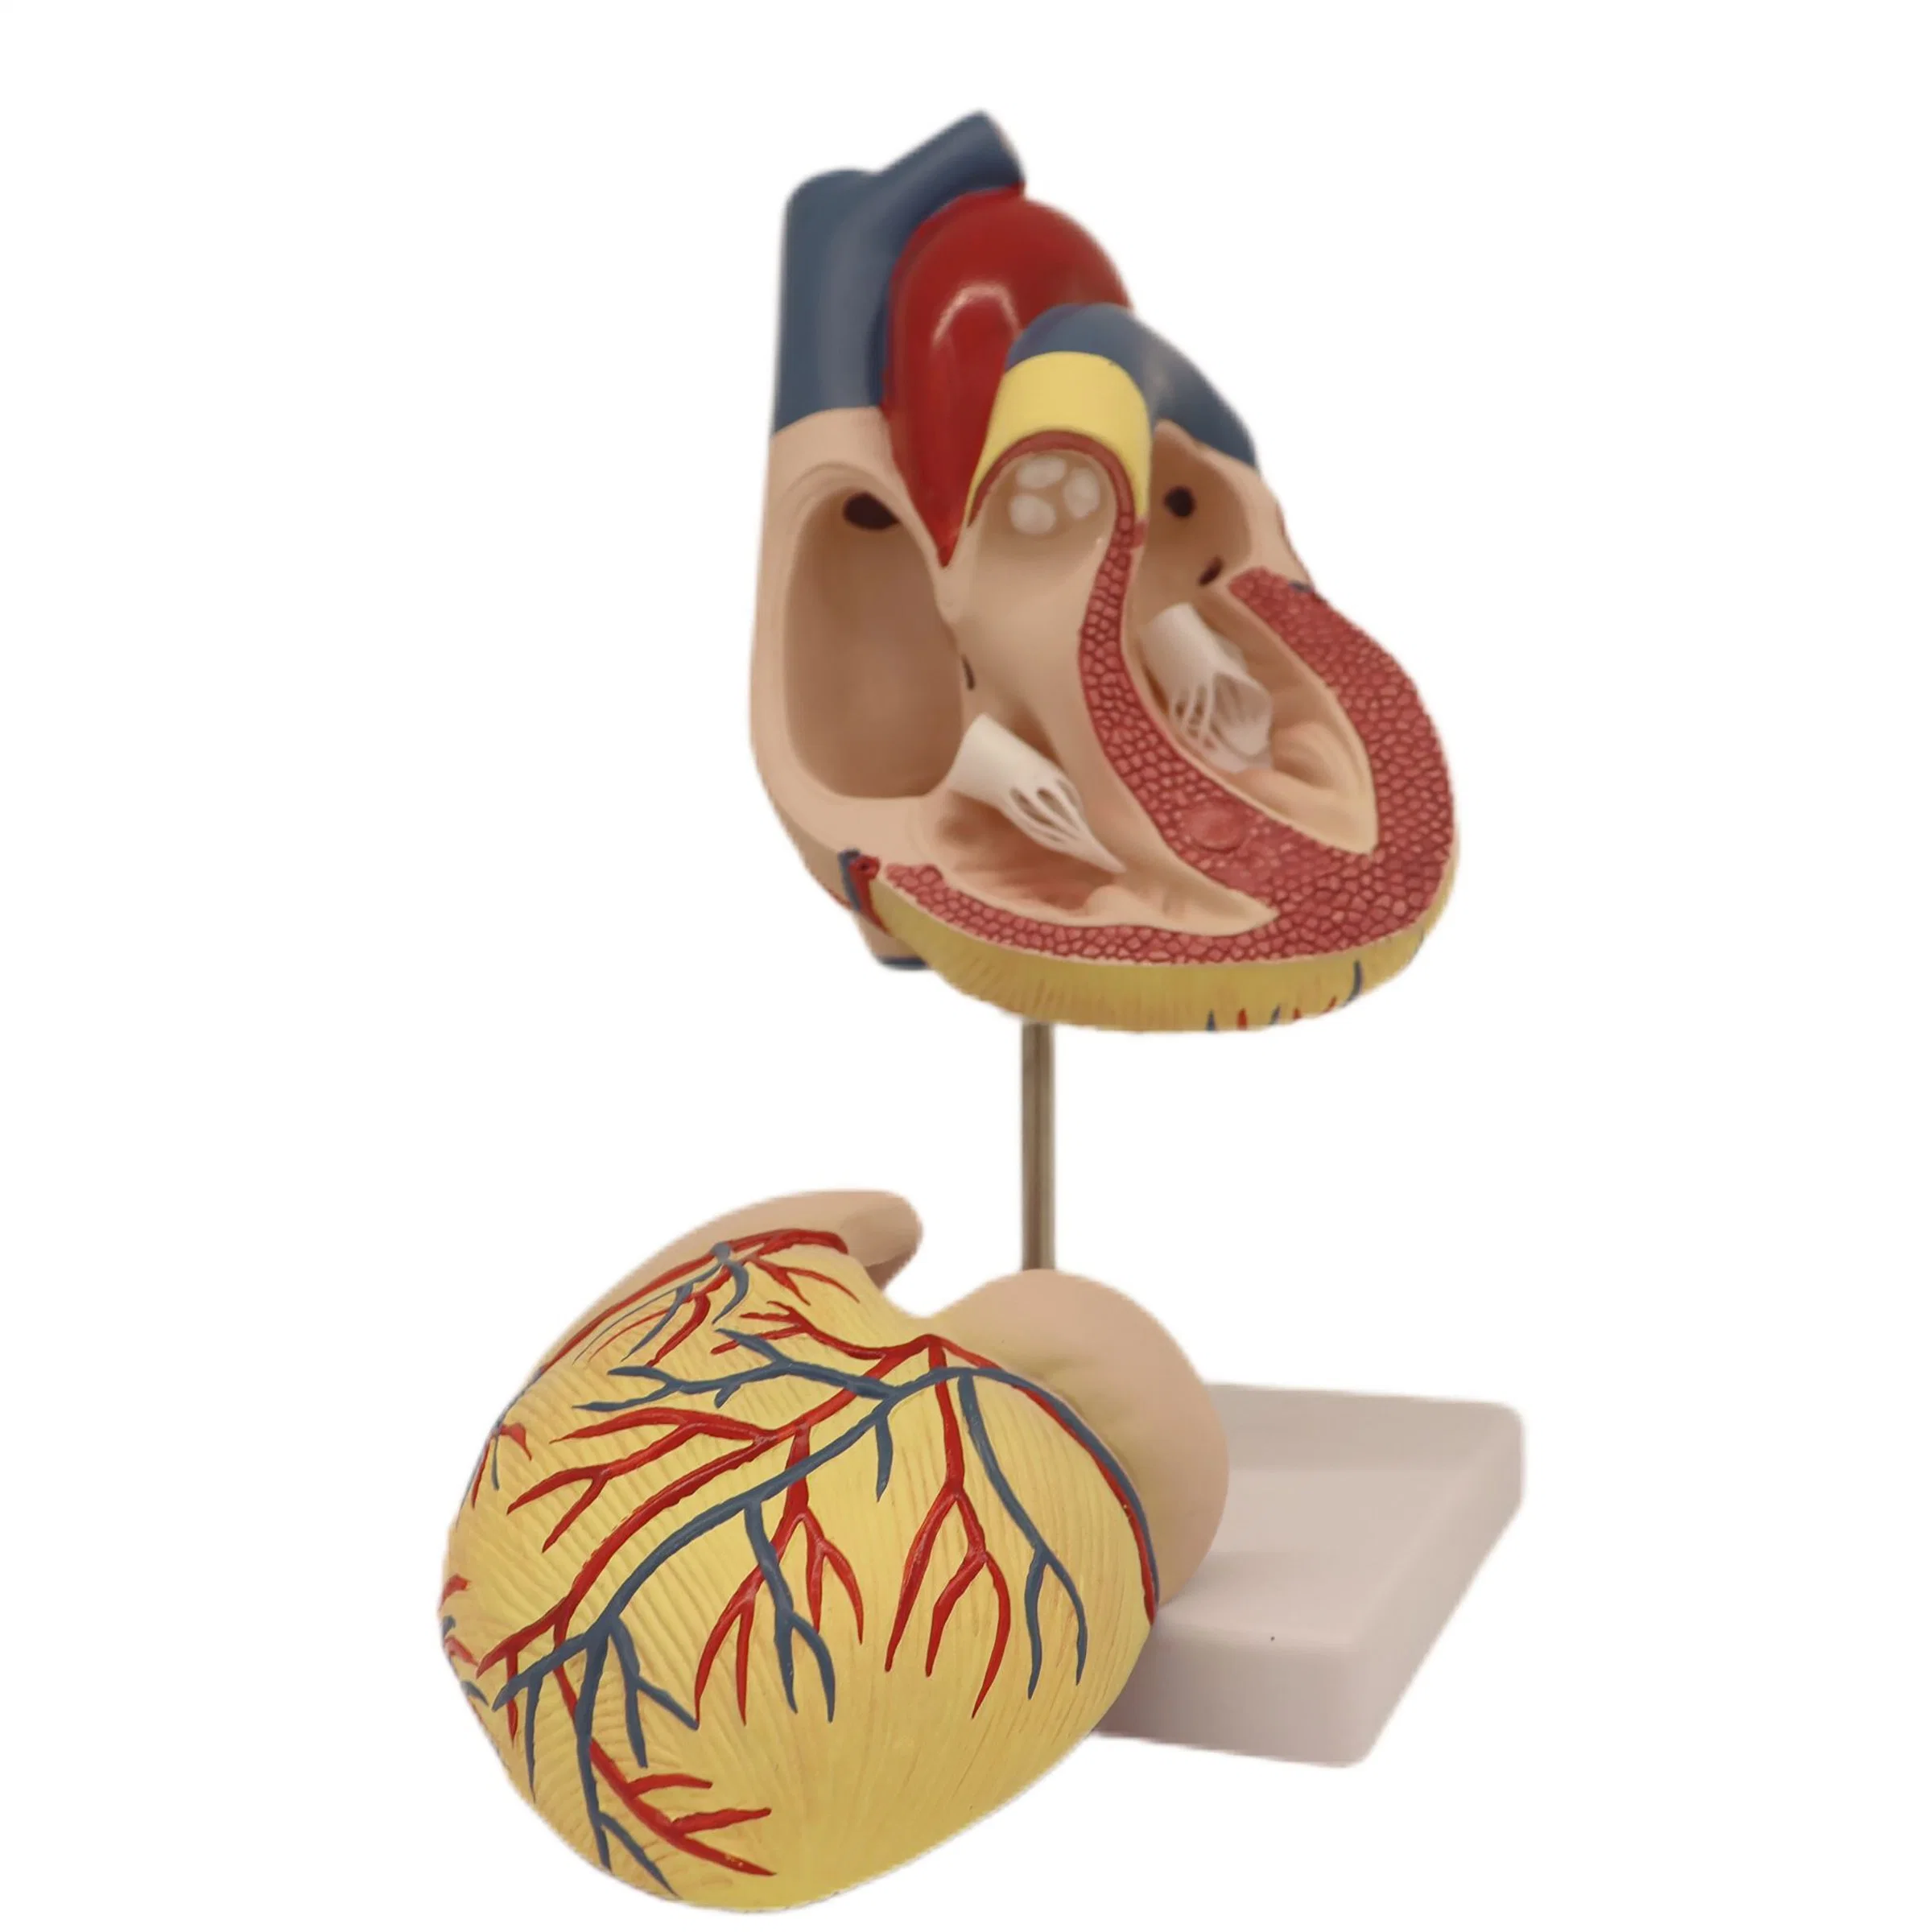 Bom preço de desconto clássico modelo anatómico com Humam PVC de boa qualidade De dissecção de coração